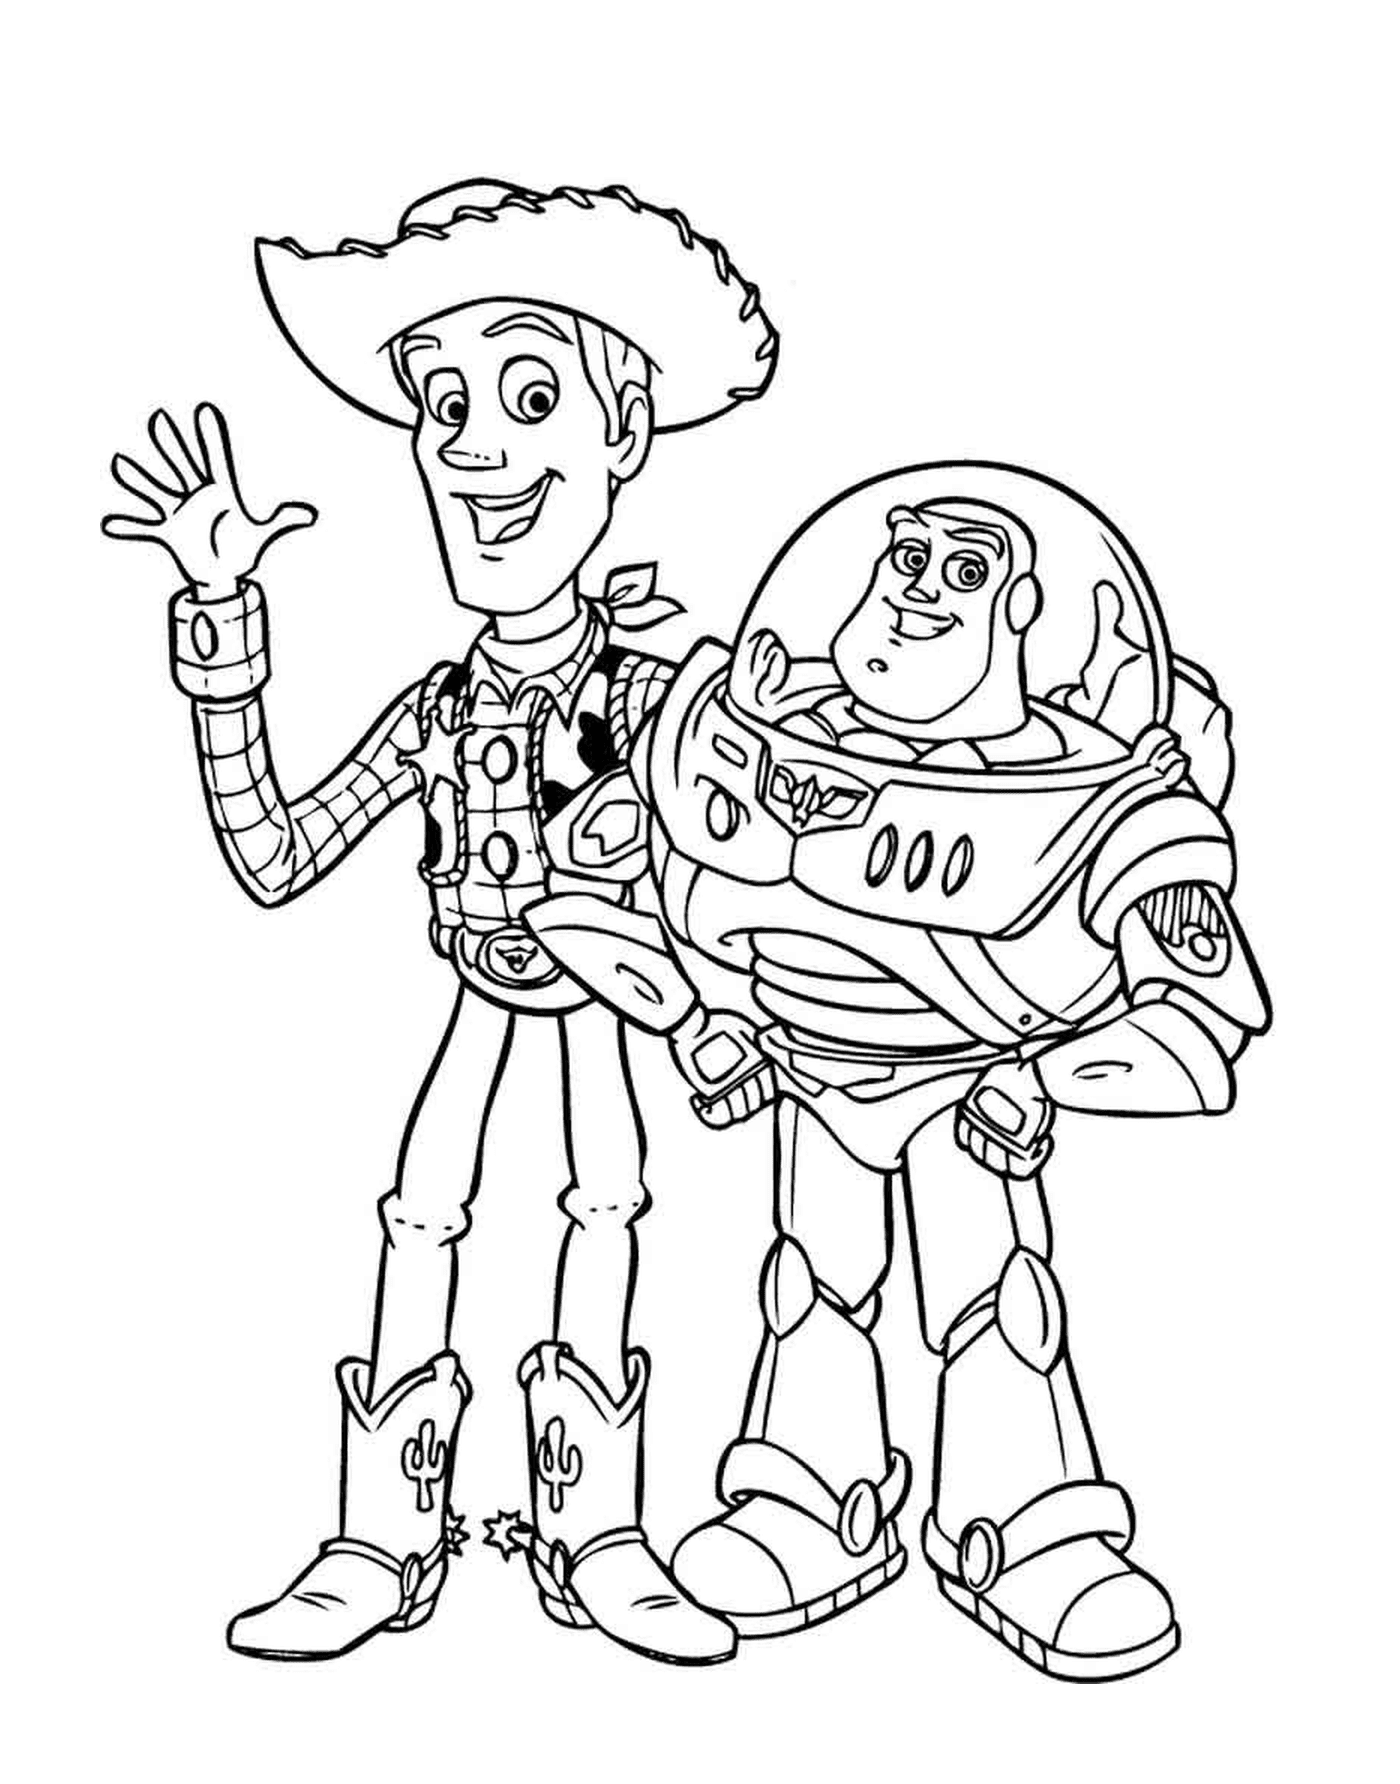  Buzz Lightyear und Woody, legendäres Duo 